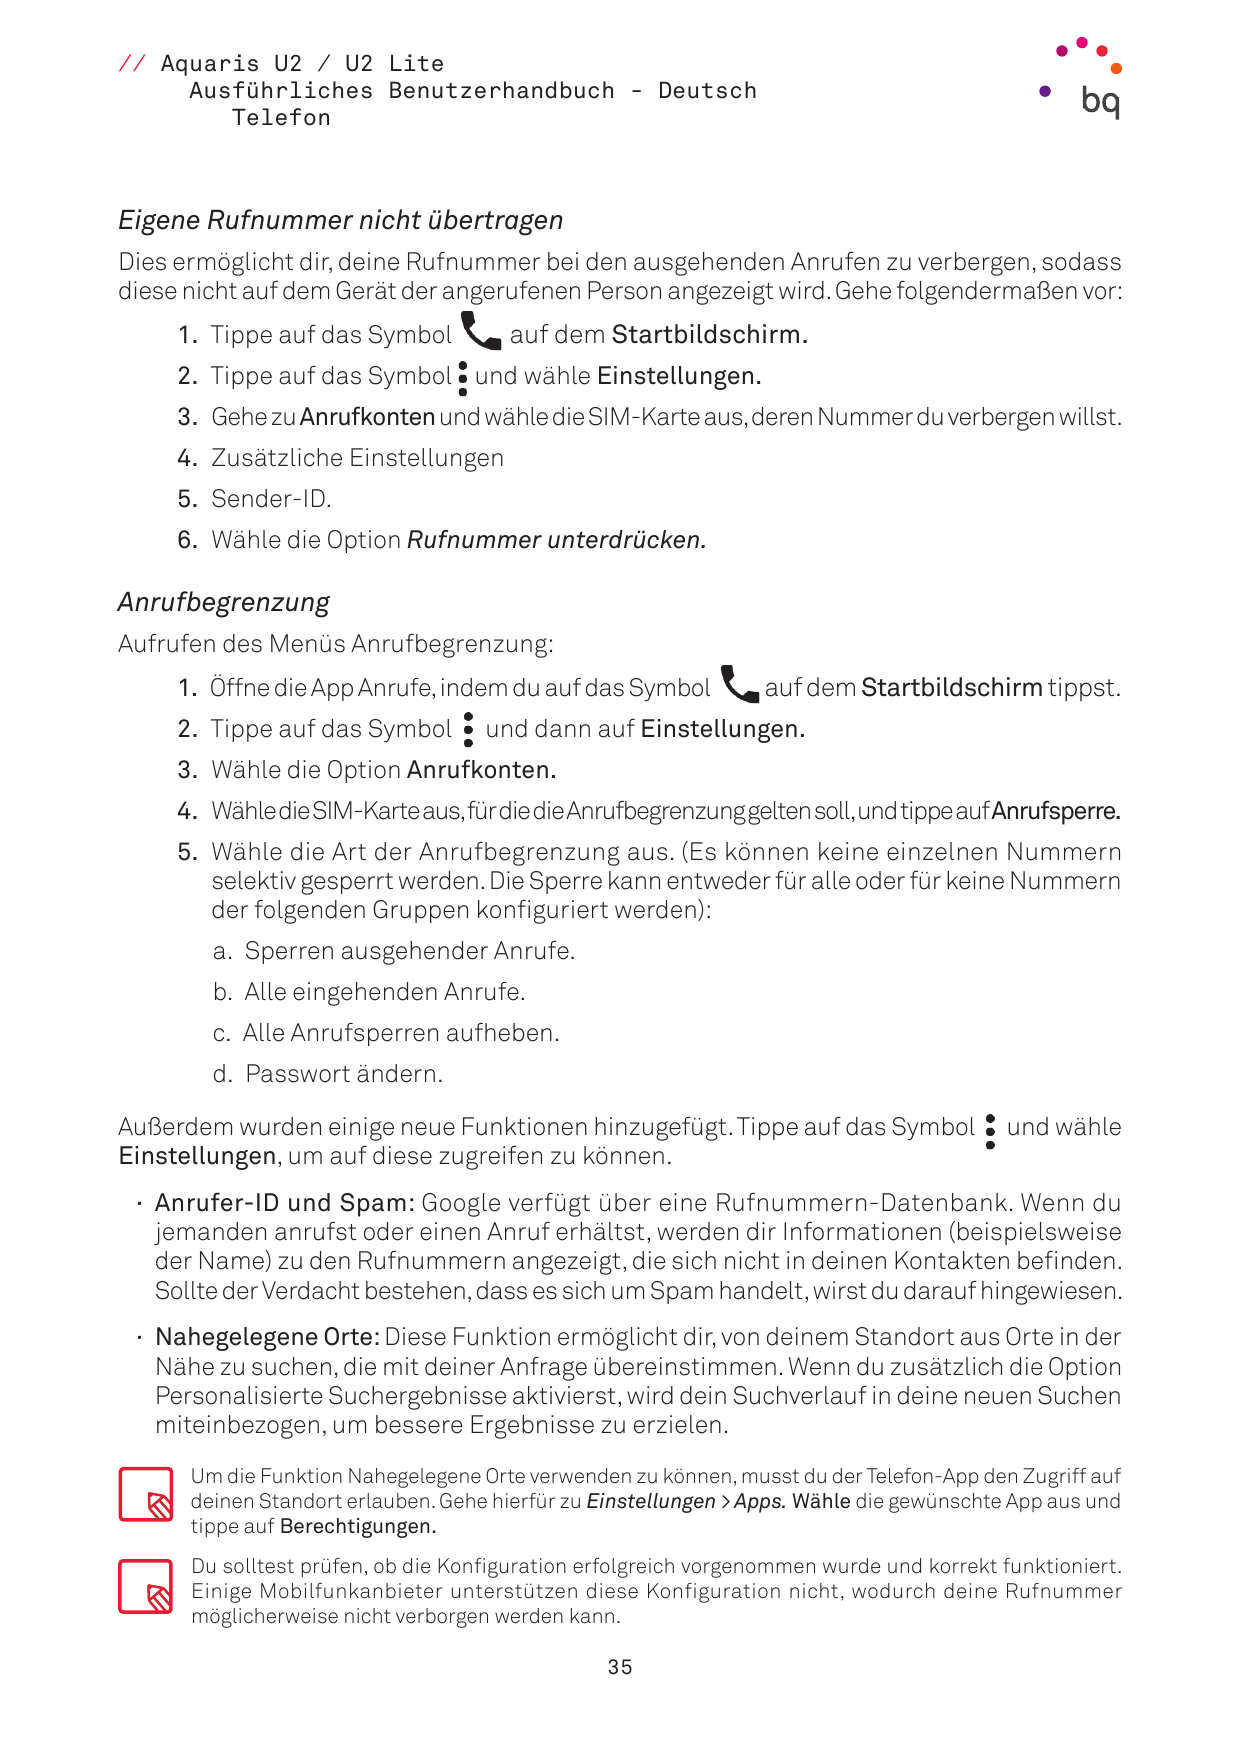 // Aquaris U2 / U2 LiteAusführliches Benutzerhandbuch - DeutschTelefonEigene Rufnummer nicht übertragenDies ermöglicht dir, dein